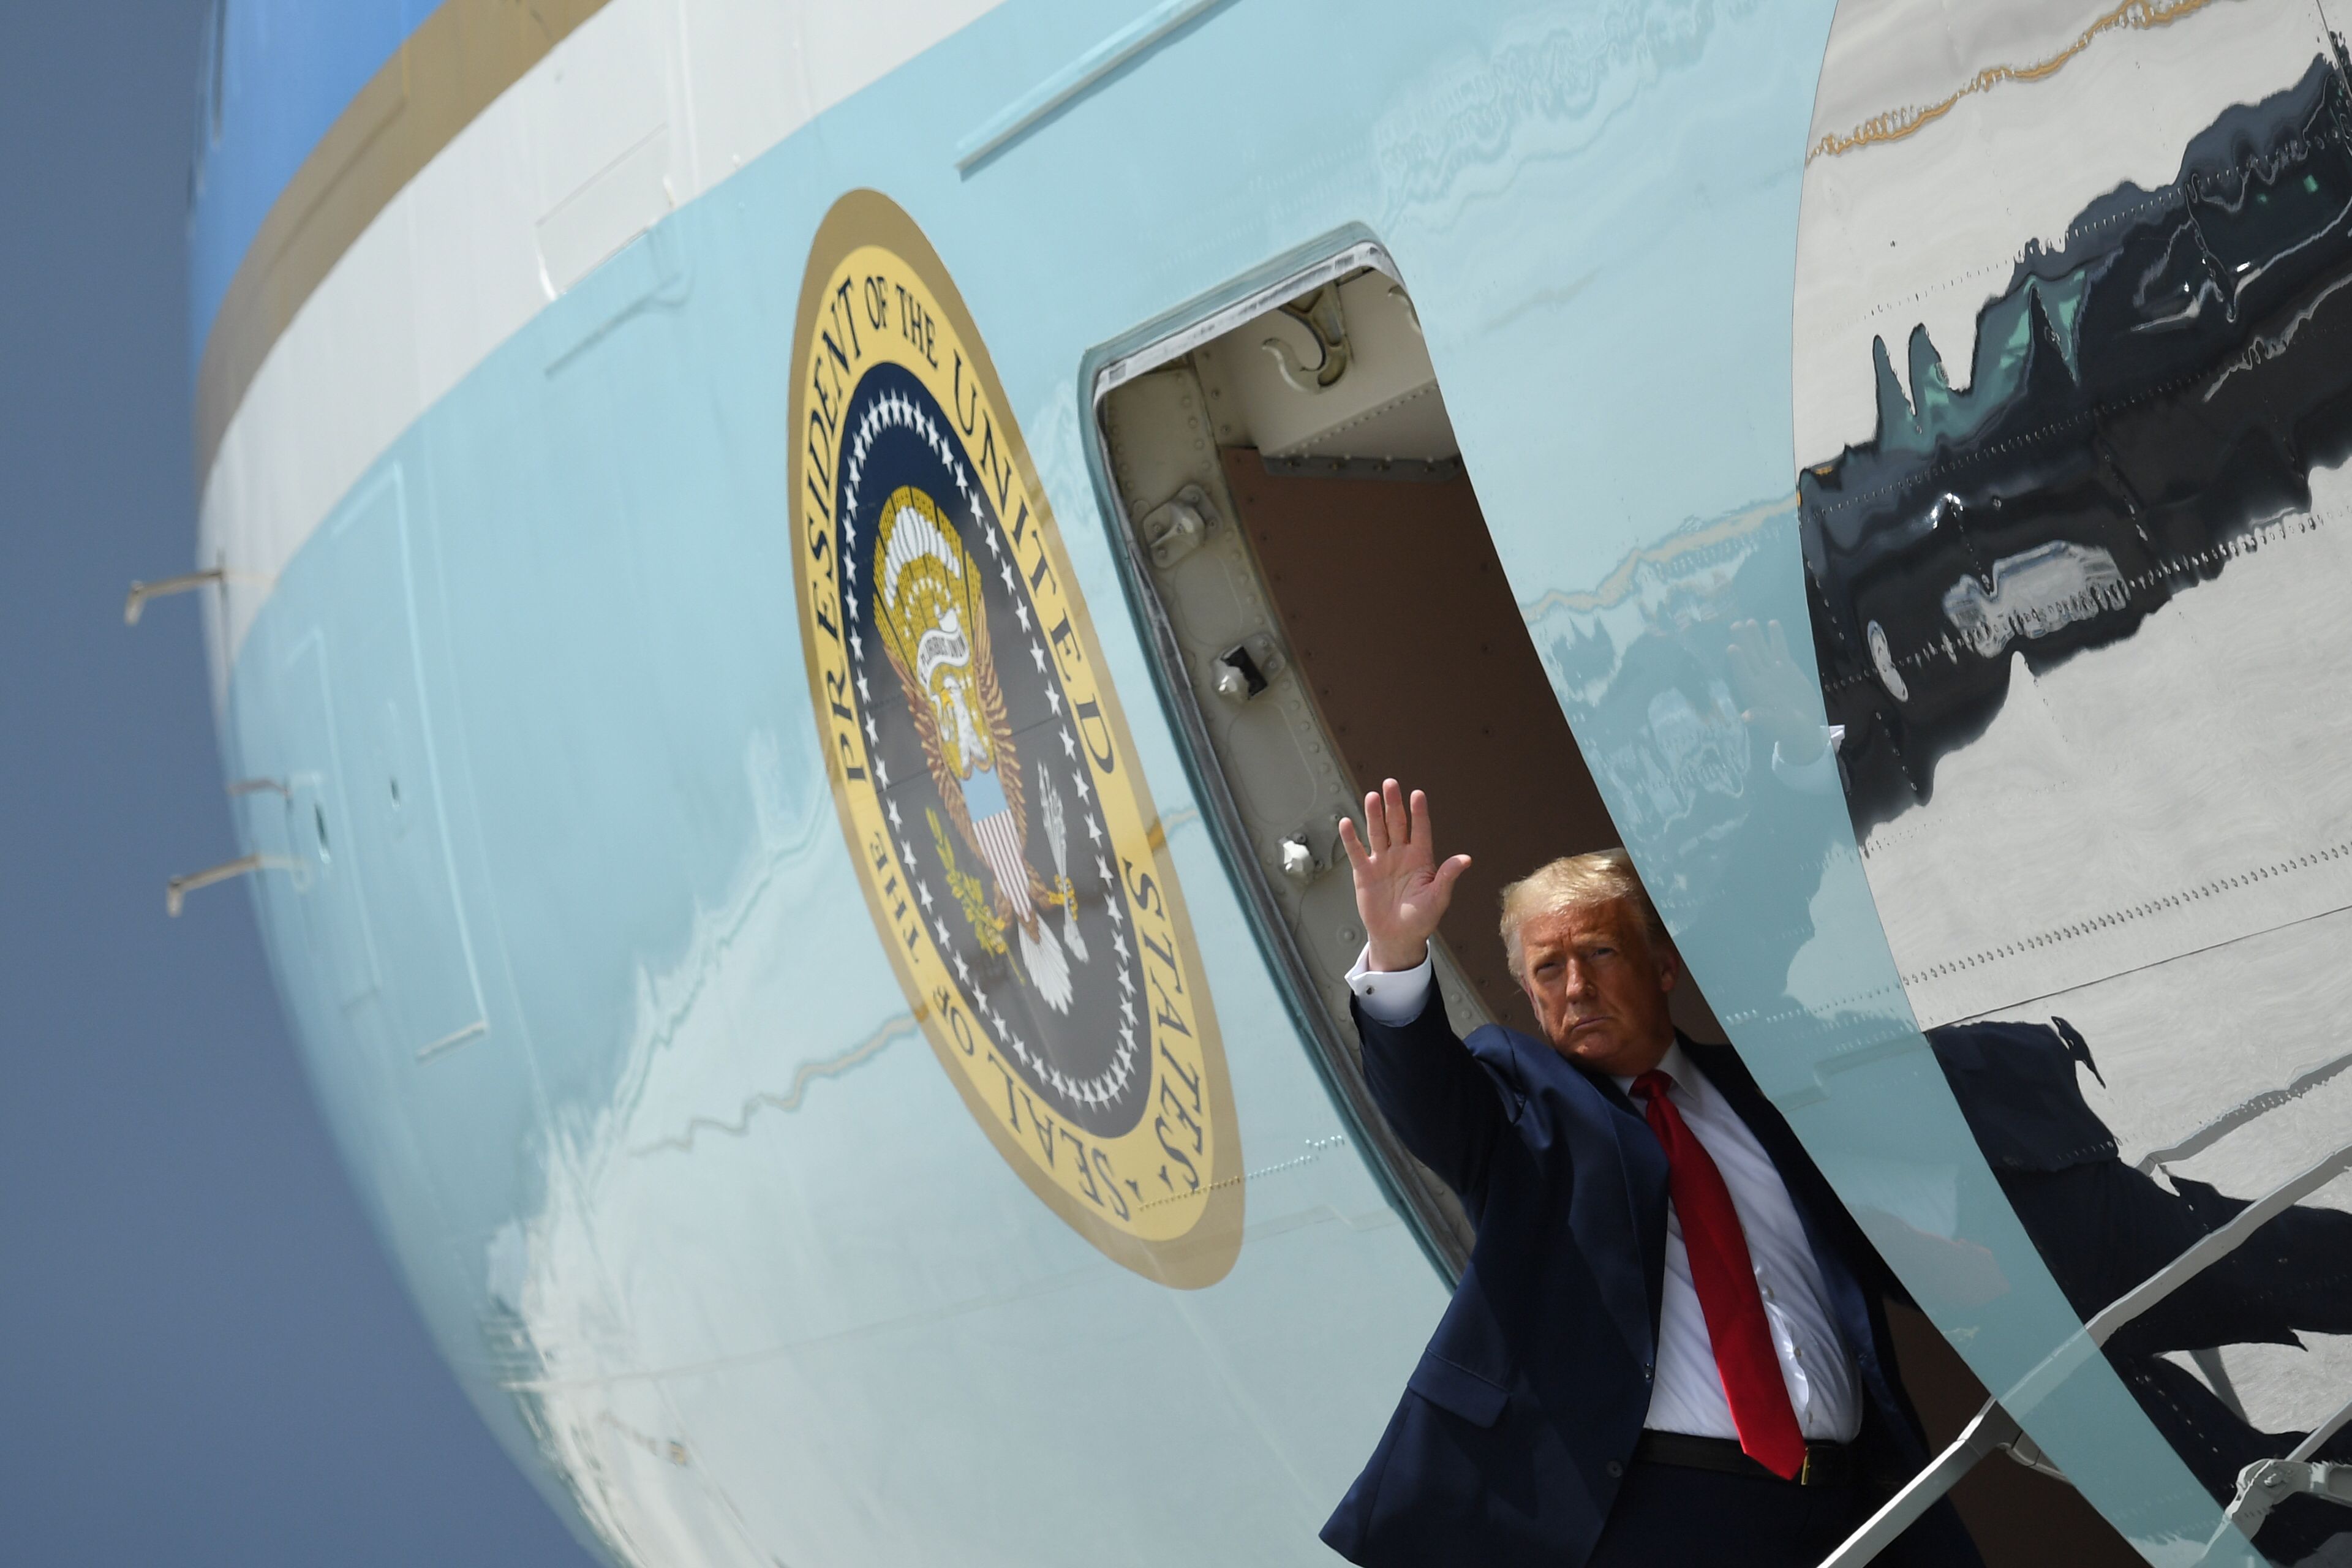 El presidente Donald Trump visitó Miami, Florida, en donde habló sobre una propuesta migratoria. (Foto Prensa Libre: AFP)